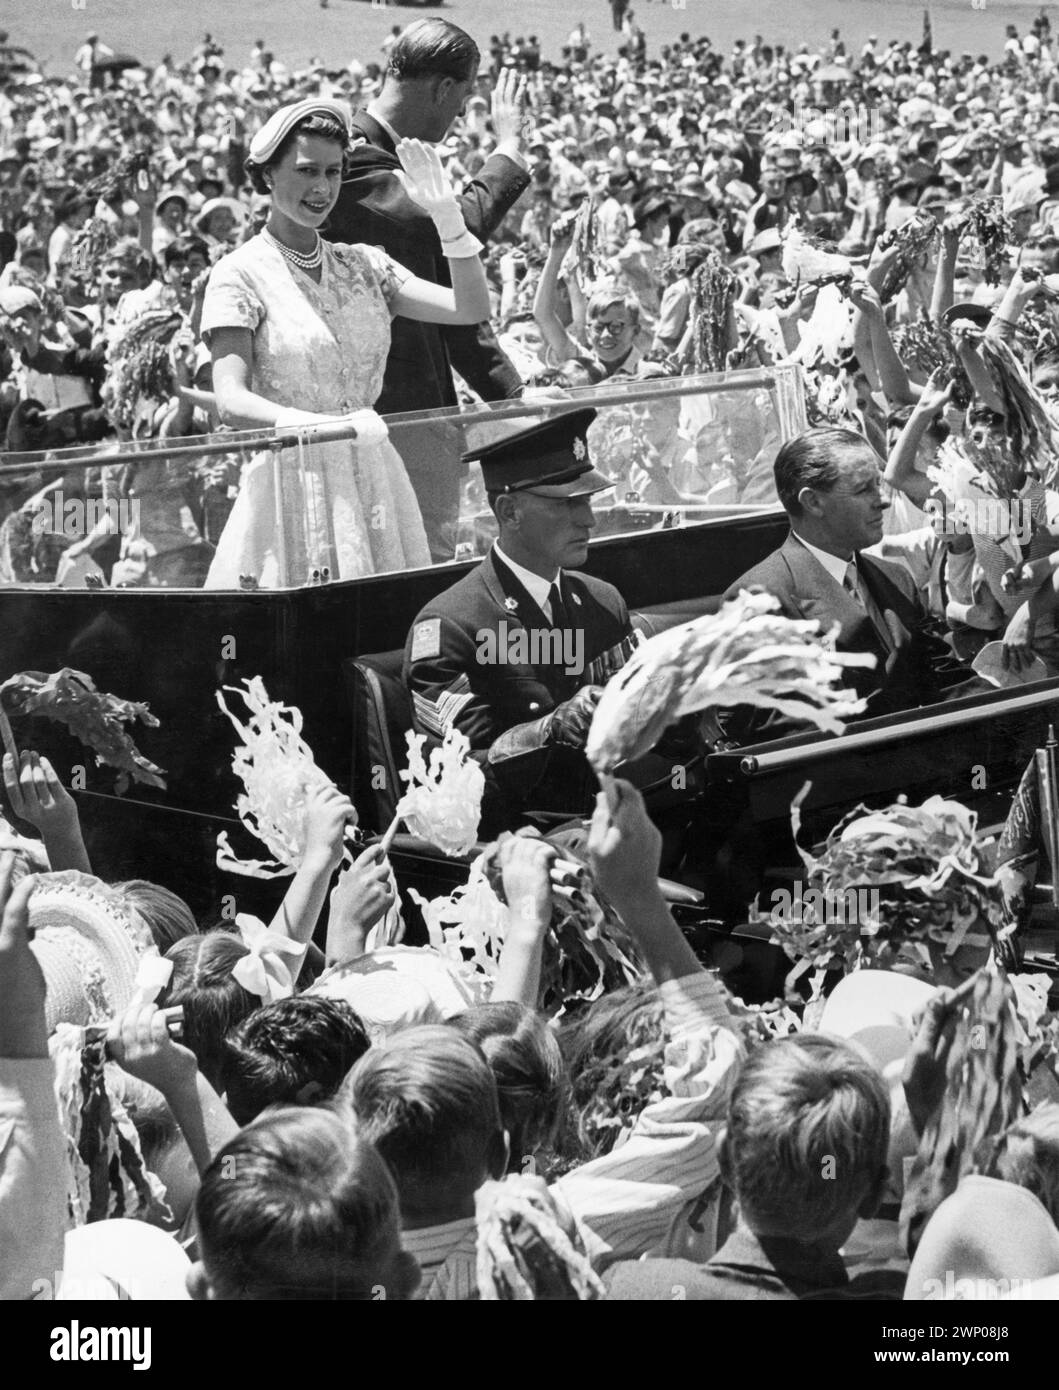 La giovane regina Elisabetta II e il principe Filippo, duca di Edimburgo, salutarono la folla durante la loro visita reale a Brisbane, Queensland, Australia nel 1954. Foto Stock